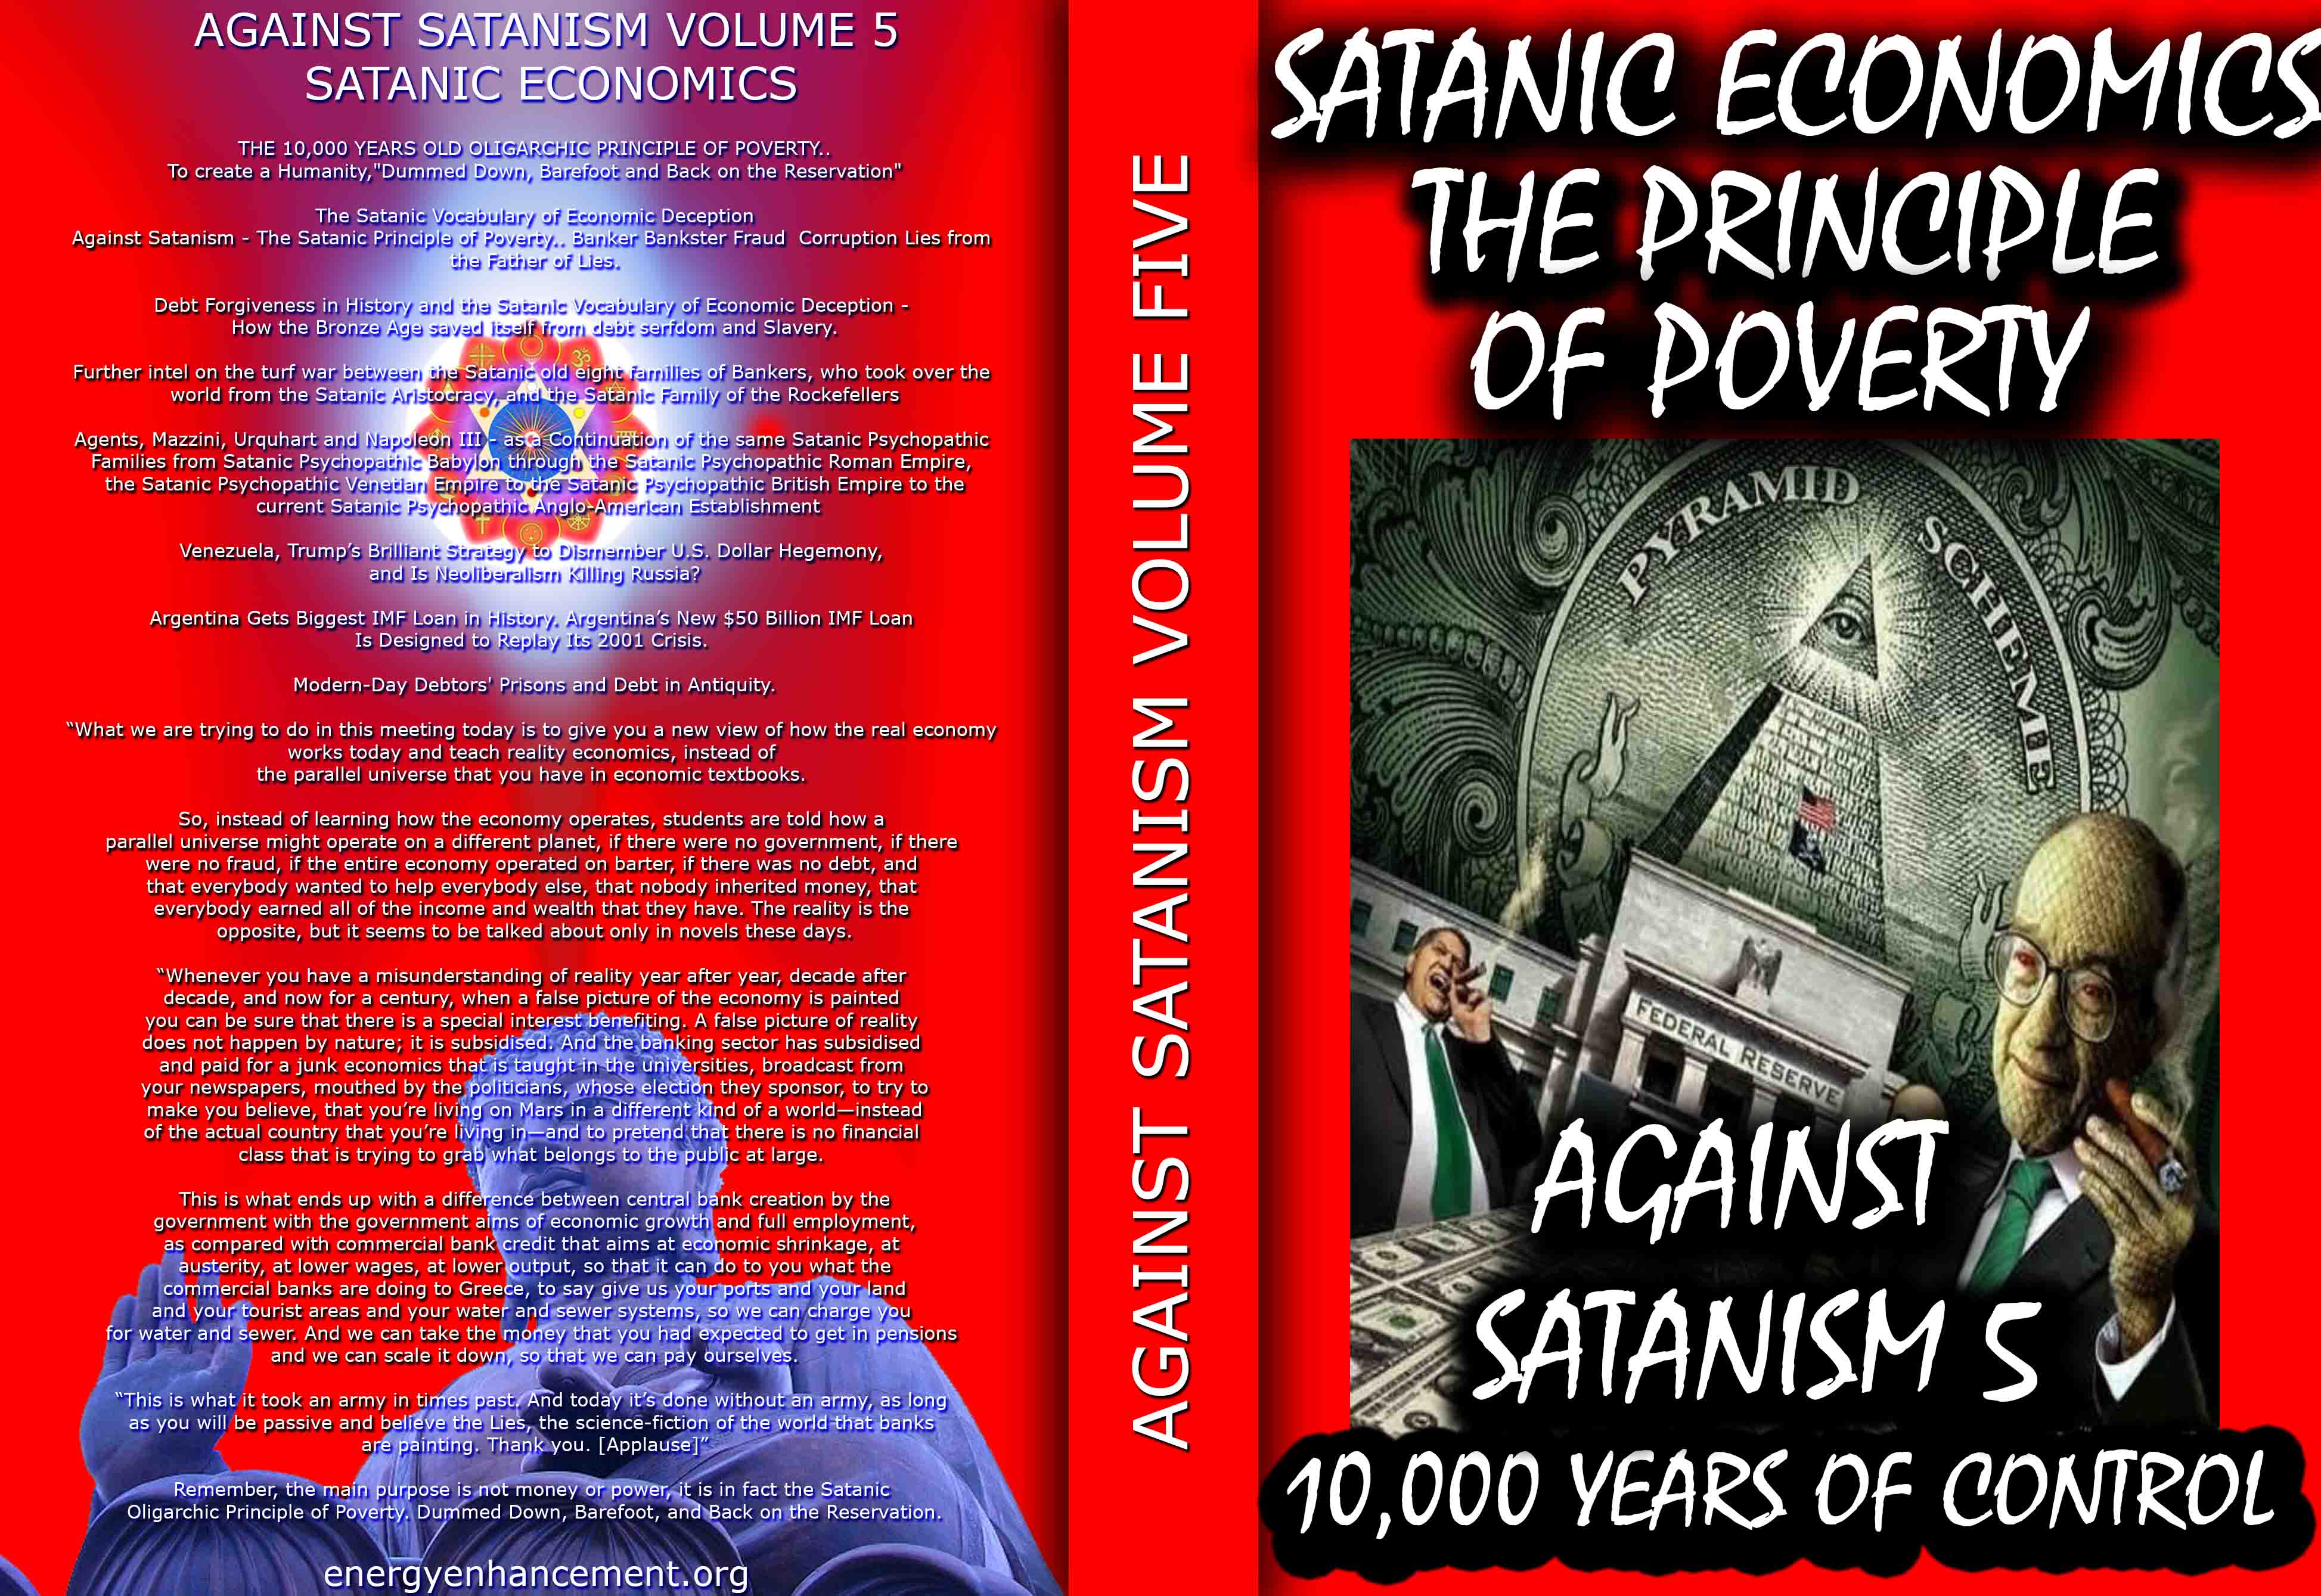 Description: Description: C:\wnew\Sacred-Energy\Against-Satanism-Volume-5\against-satanism-vol5.jpg